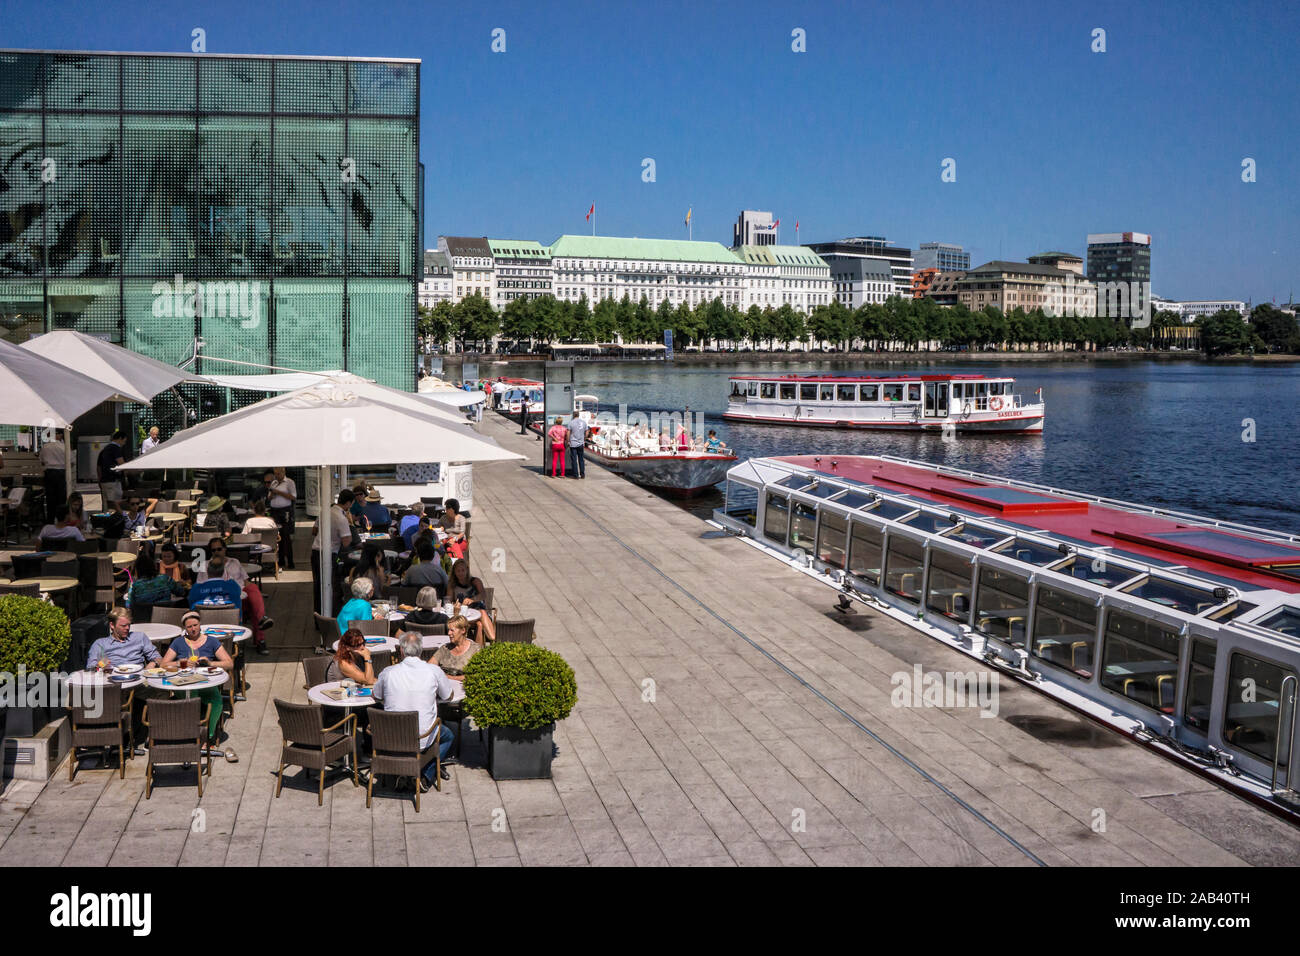 Anlegestelle für Ausflugsboote an der en Hamburgo Binnenalster |embarcadero para realizar paseos en barco por el lago Alster en Hamburgo| Foto de stock